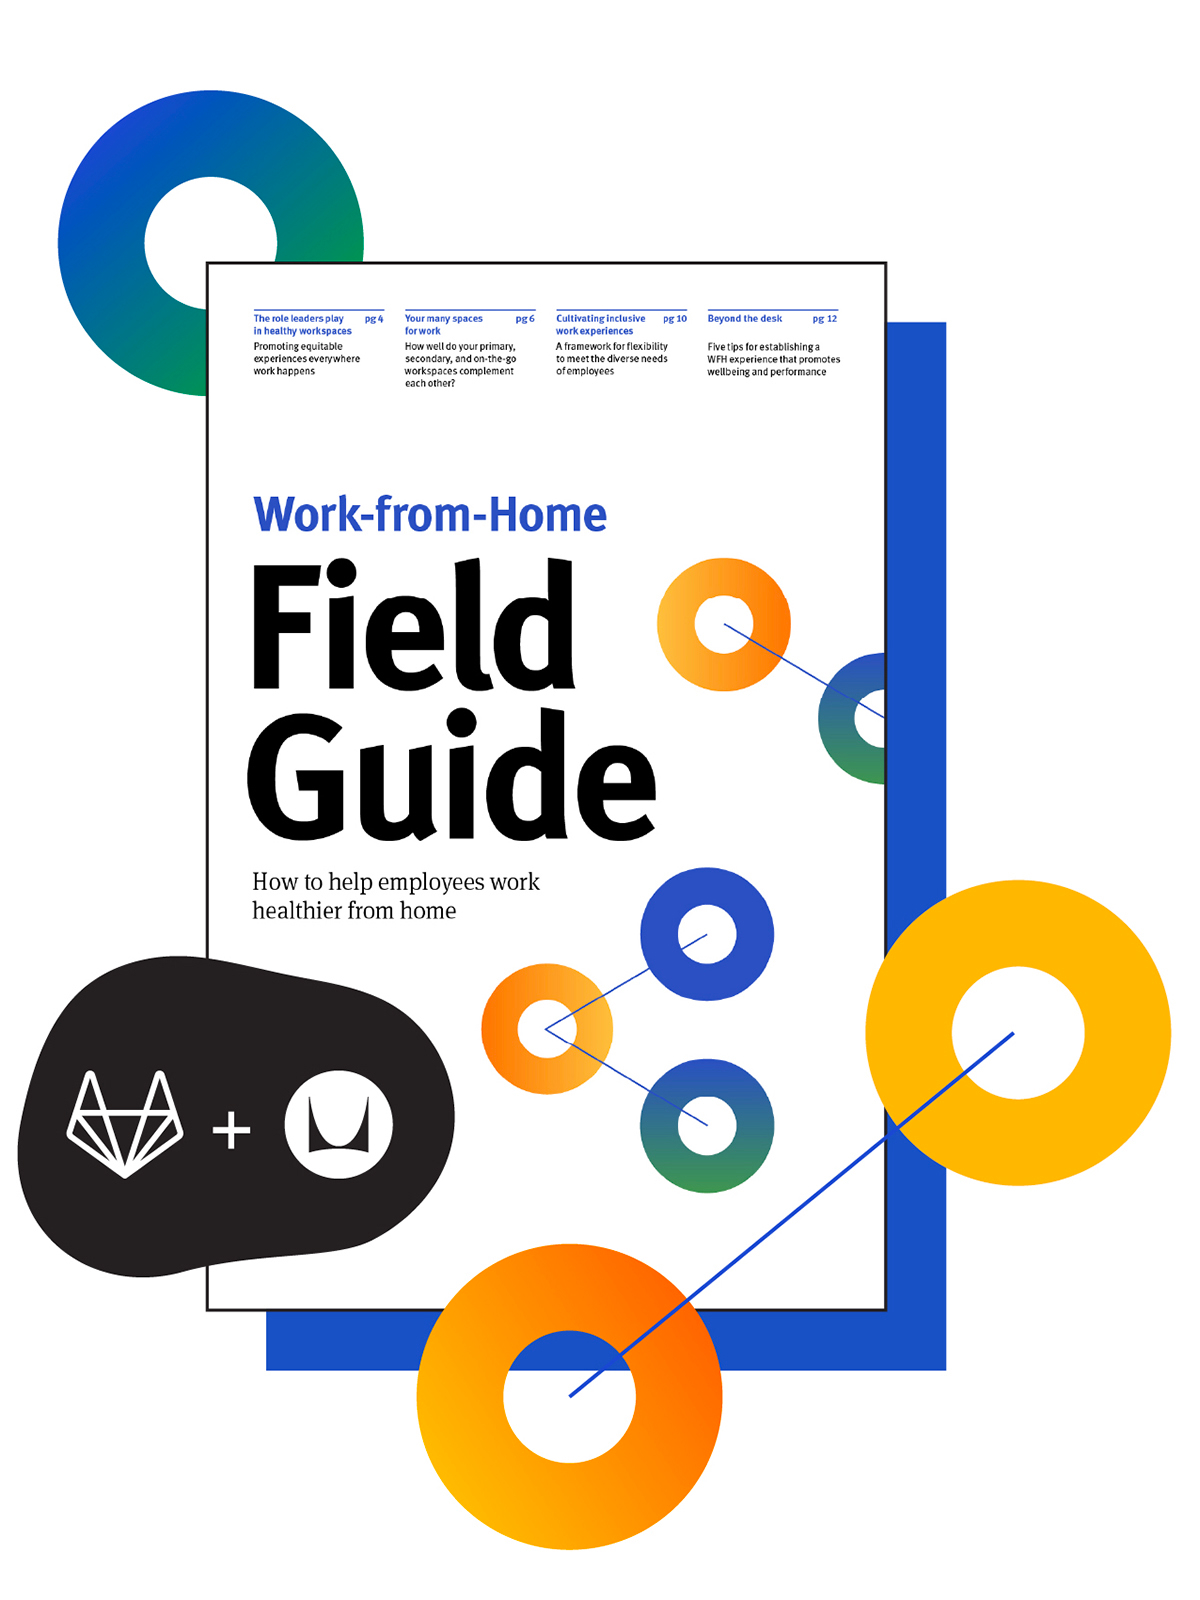 Capa do Guia de campo do trabalho em casa, uma colaboração entre os especialistas em trabalho remoto da GitLab e da Herman Miller.